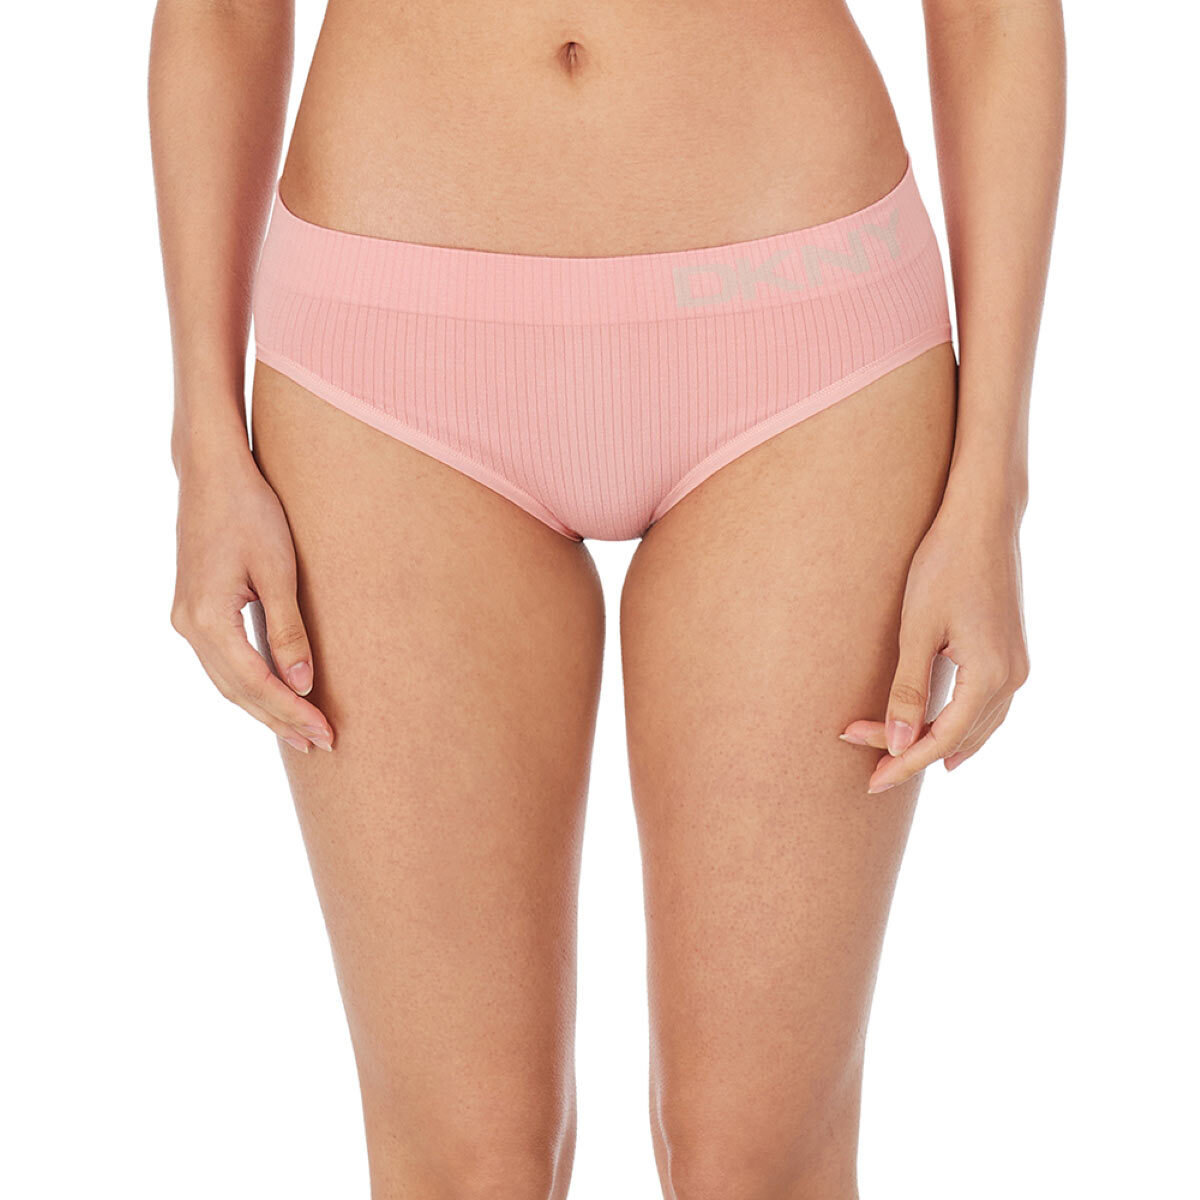 Frugal Hotspot on X: #Costco Sale: #DKNY Ladies Seamless #Bikini